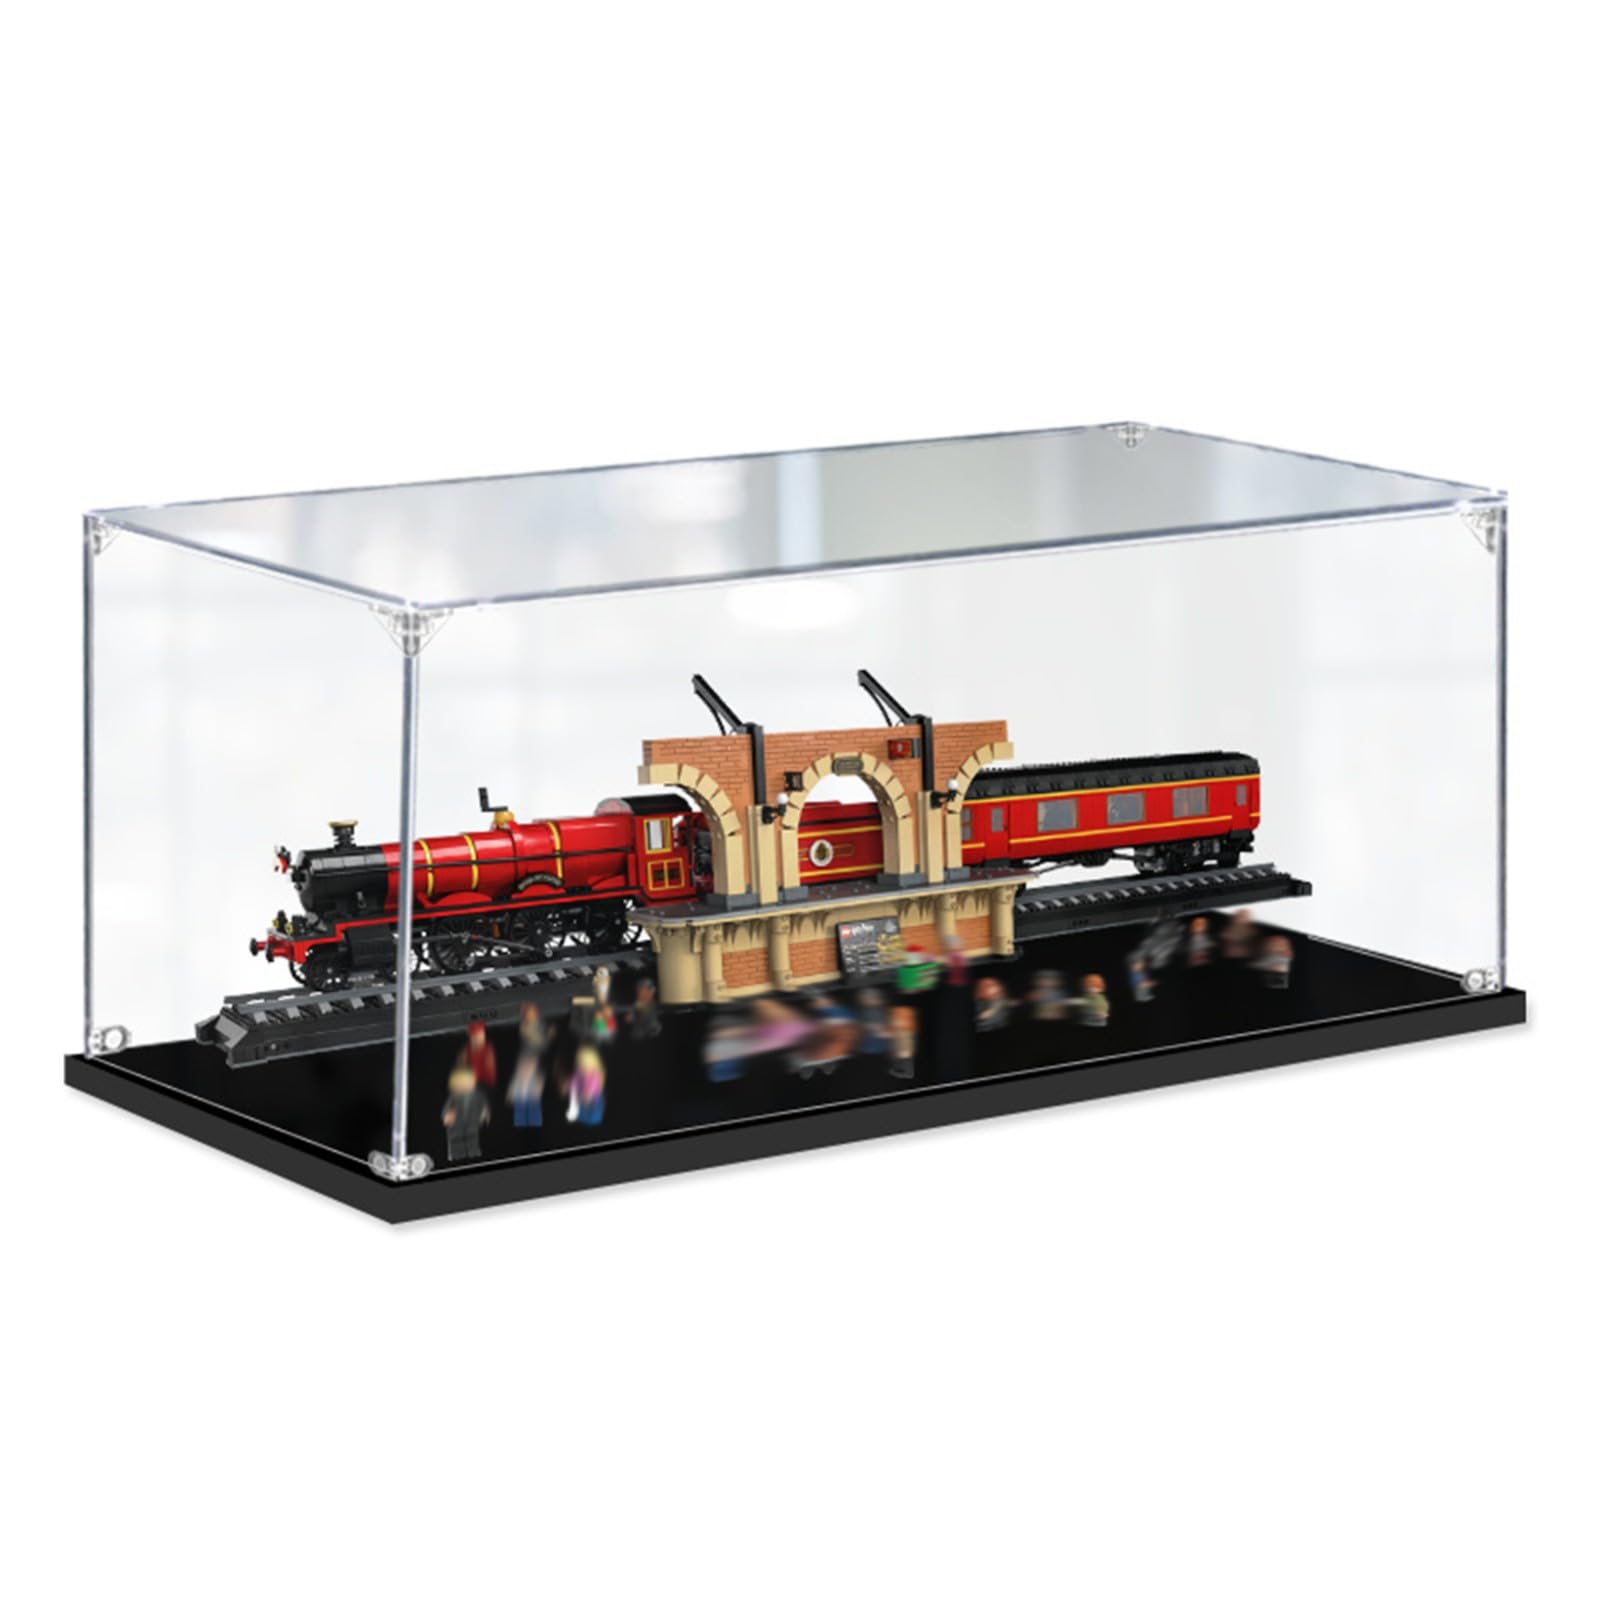 Acryl Vitrine Box Für Lego 76405 Hogwarts Express™, Acryl Vitrine, staubdichte Aufbewahrungsbox Präsentationsbox für Minifiguren Spielzeug Sammlung (120 * 25 * 30cm) 2mm